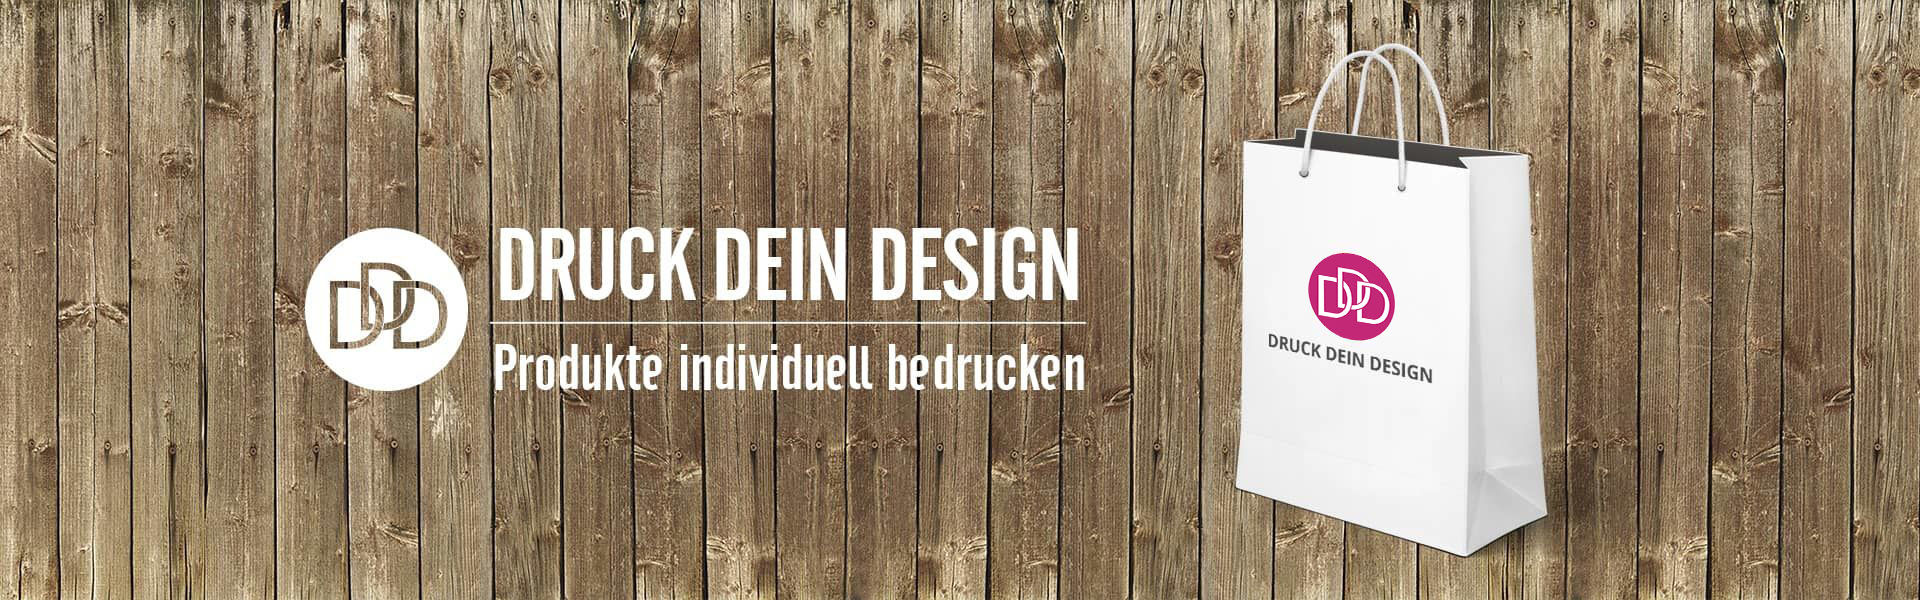 Banner Druck Dein Design